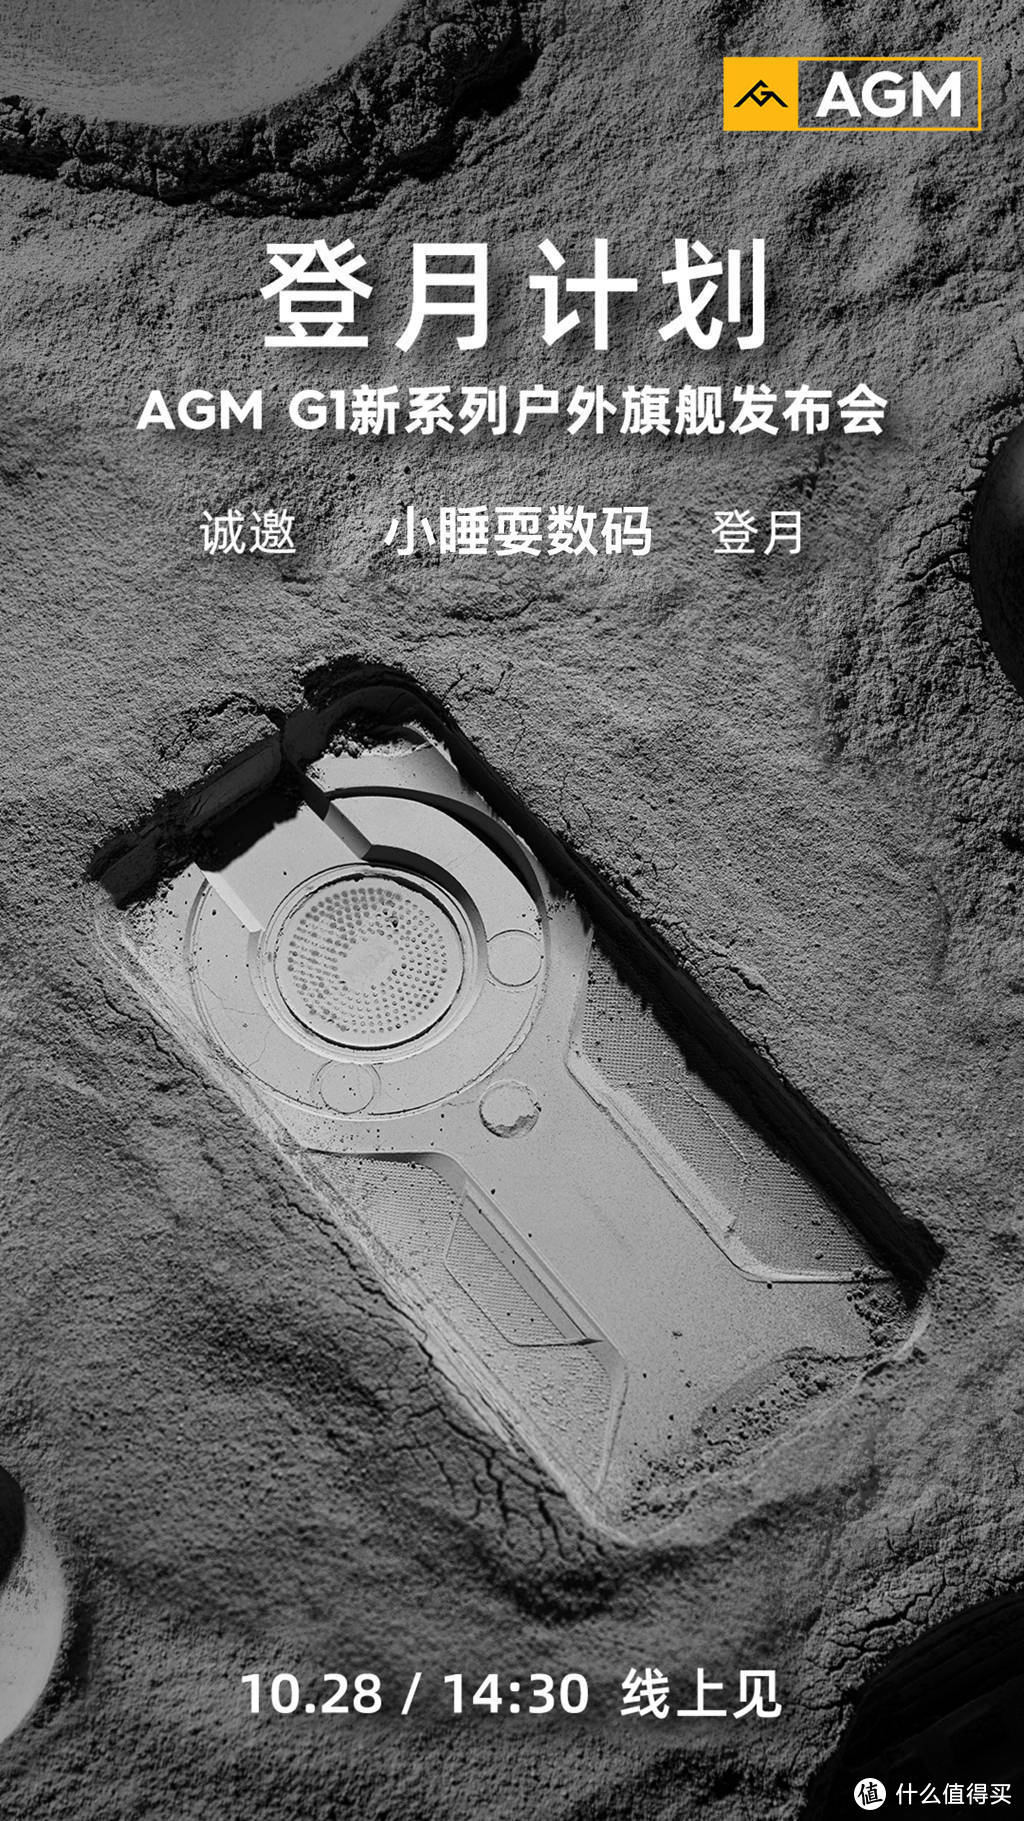 AGM G1新机曝光，邀请函上能看出啥？热成像和激光测距功能是亮点